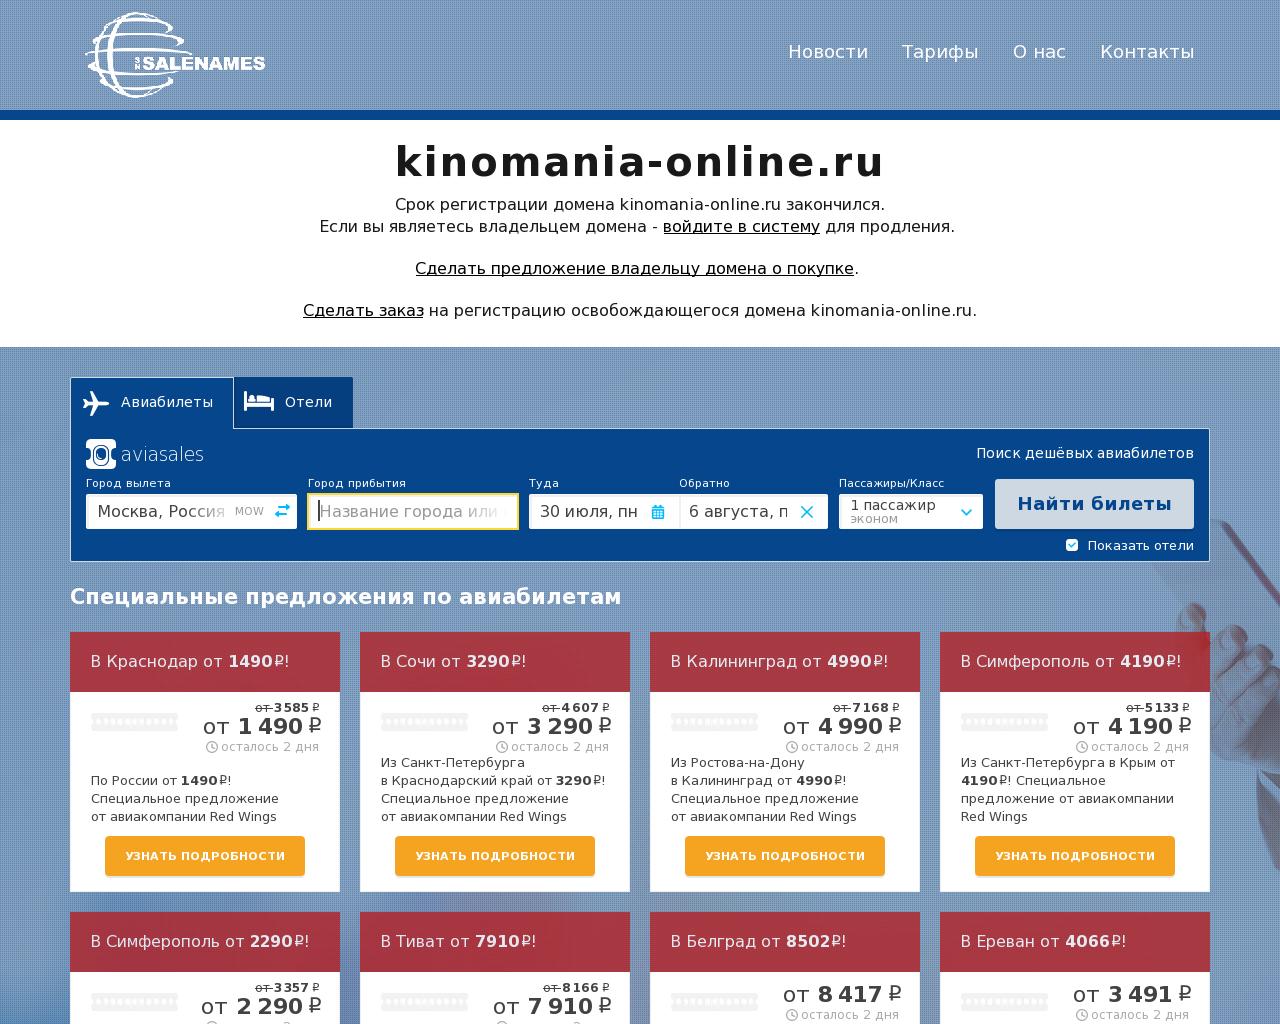 Изображение сайта kinomania-online.ru в разрешении 1280x1024